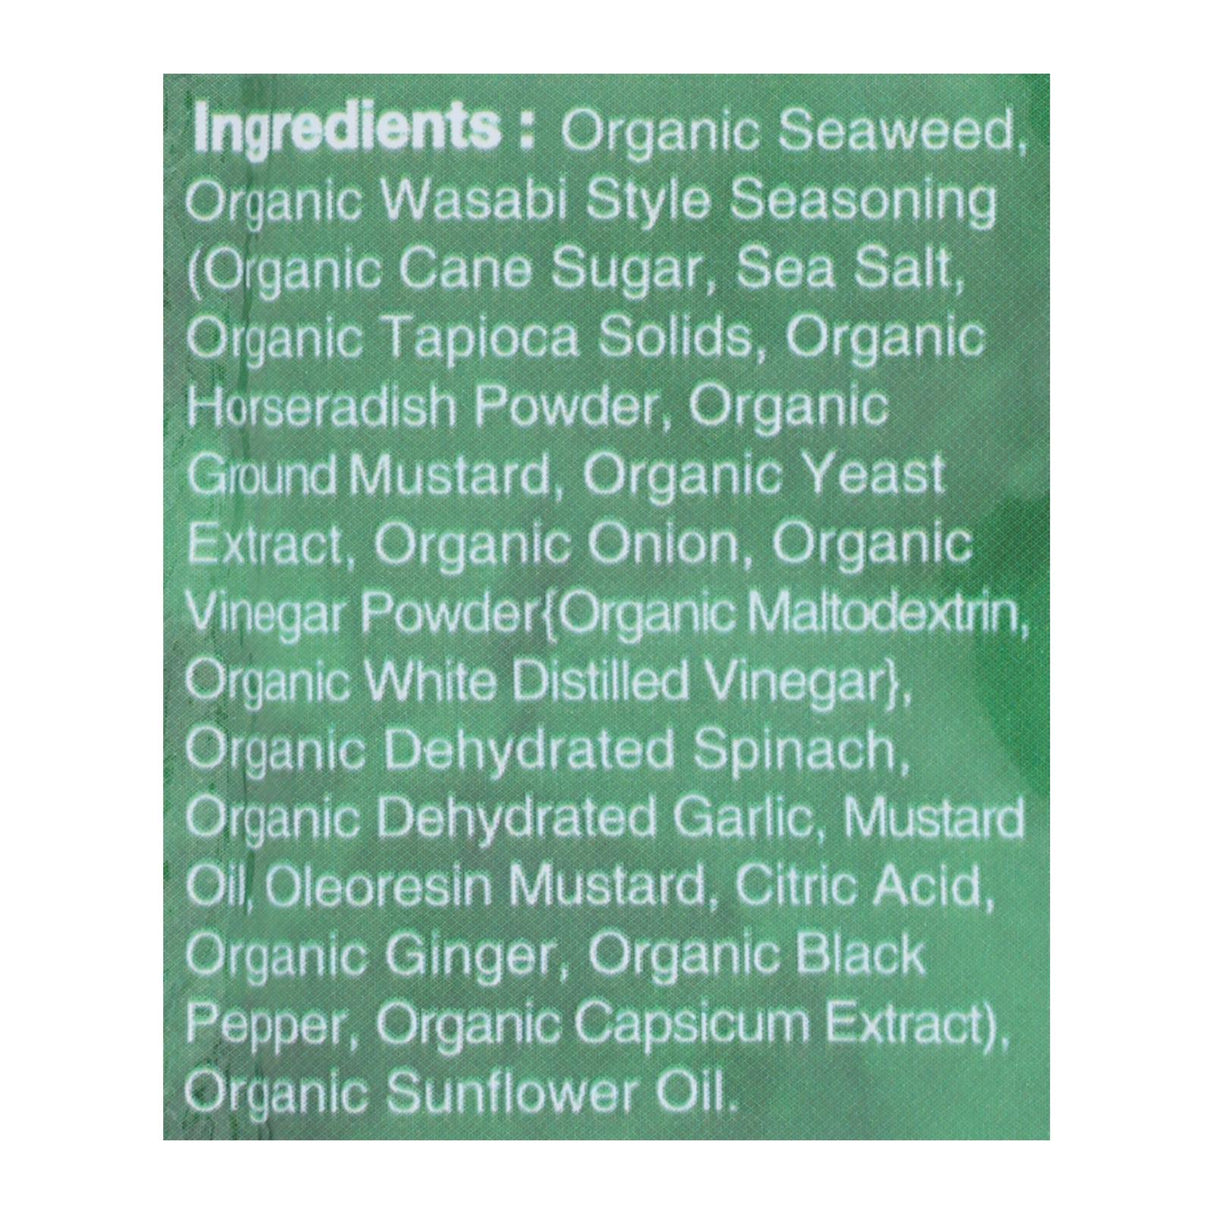 Ocean's Halo Premium Seaweed Snack, Wasabi Flavor, Gluten-Free, Case of 12, 0.14 Oz - Cozy Farm 